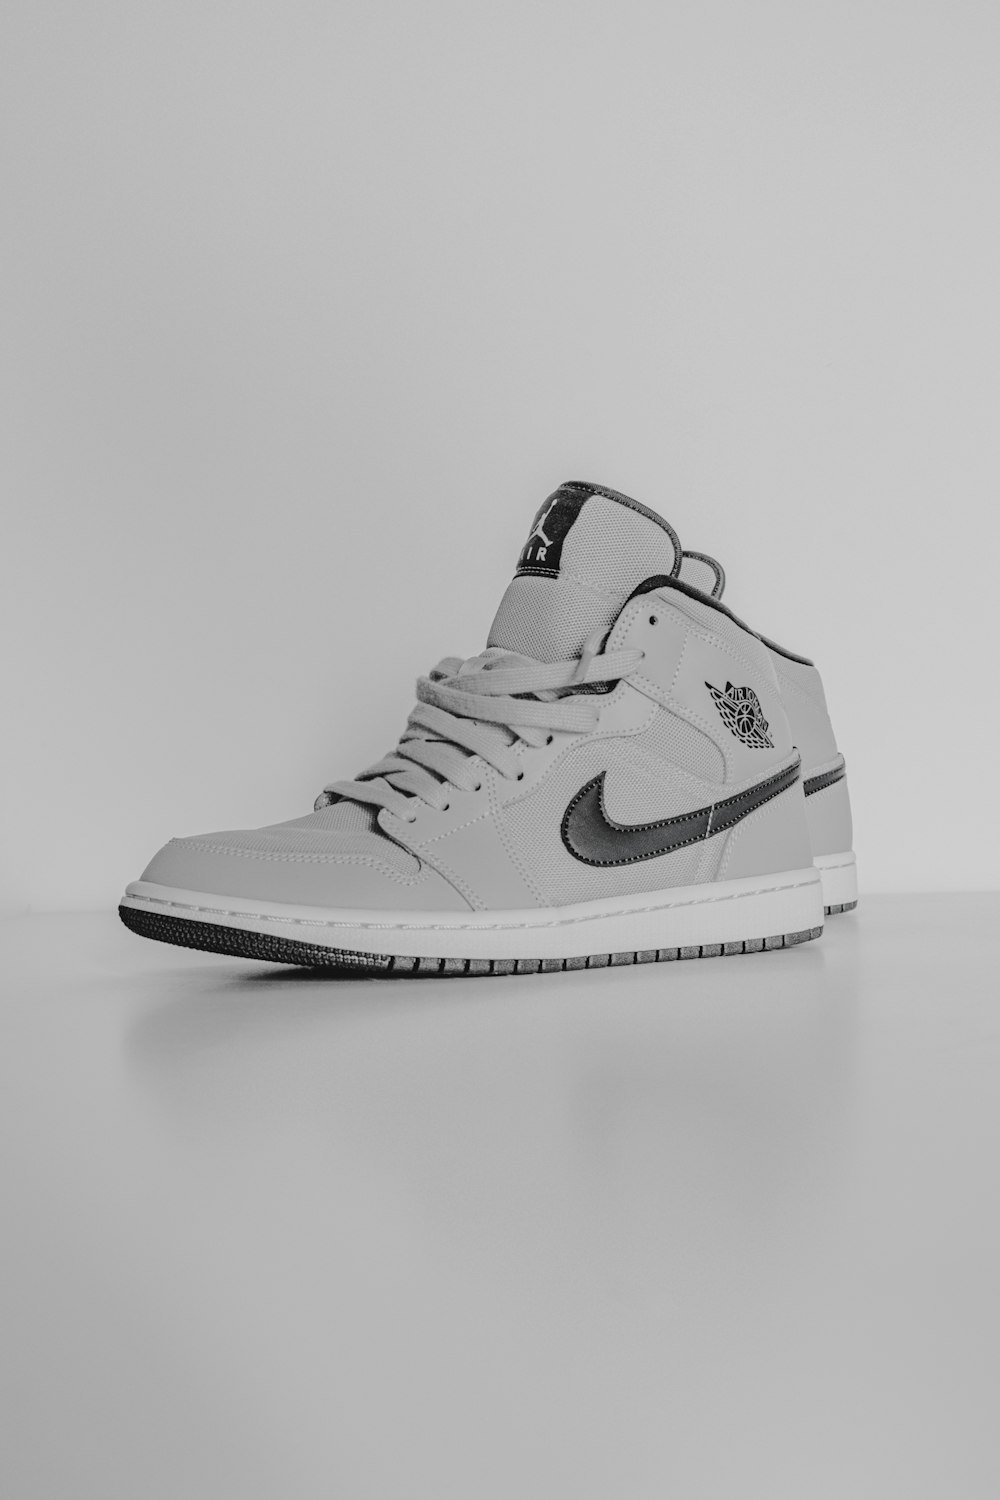 Nike air jordan 1 bianche e nere foto – Grigio Immagine gratuita su Unsplash